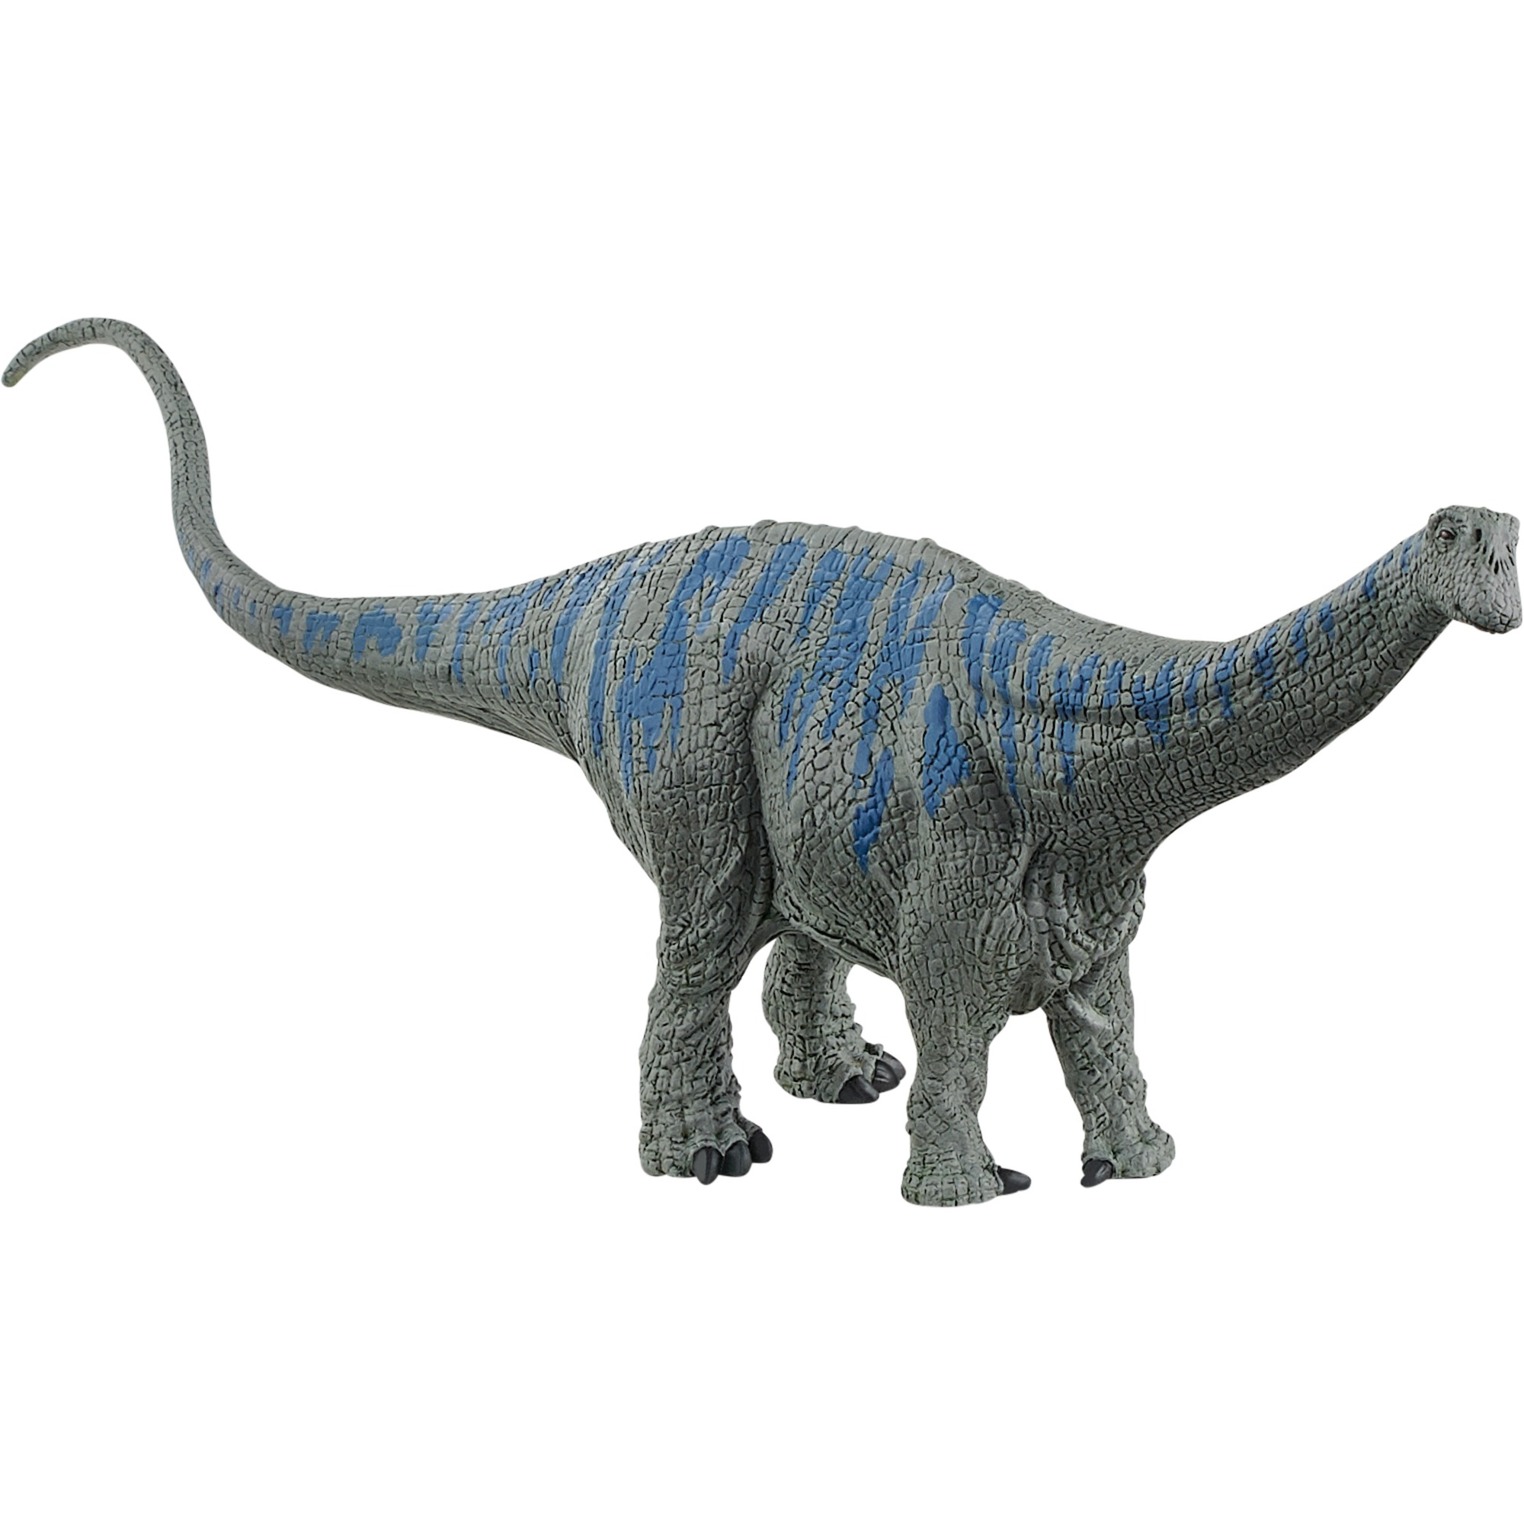 Image of Alternate - Brontosaurus, Spielfigur online einkaufen bei Alternate